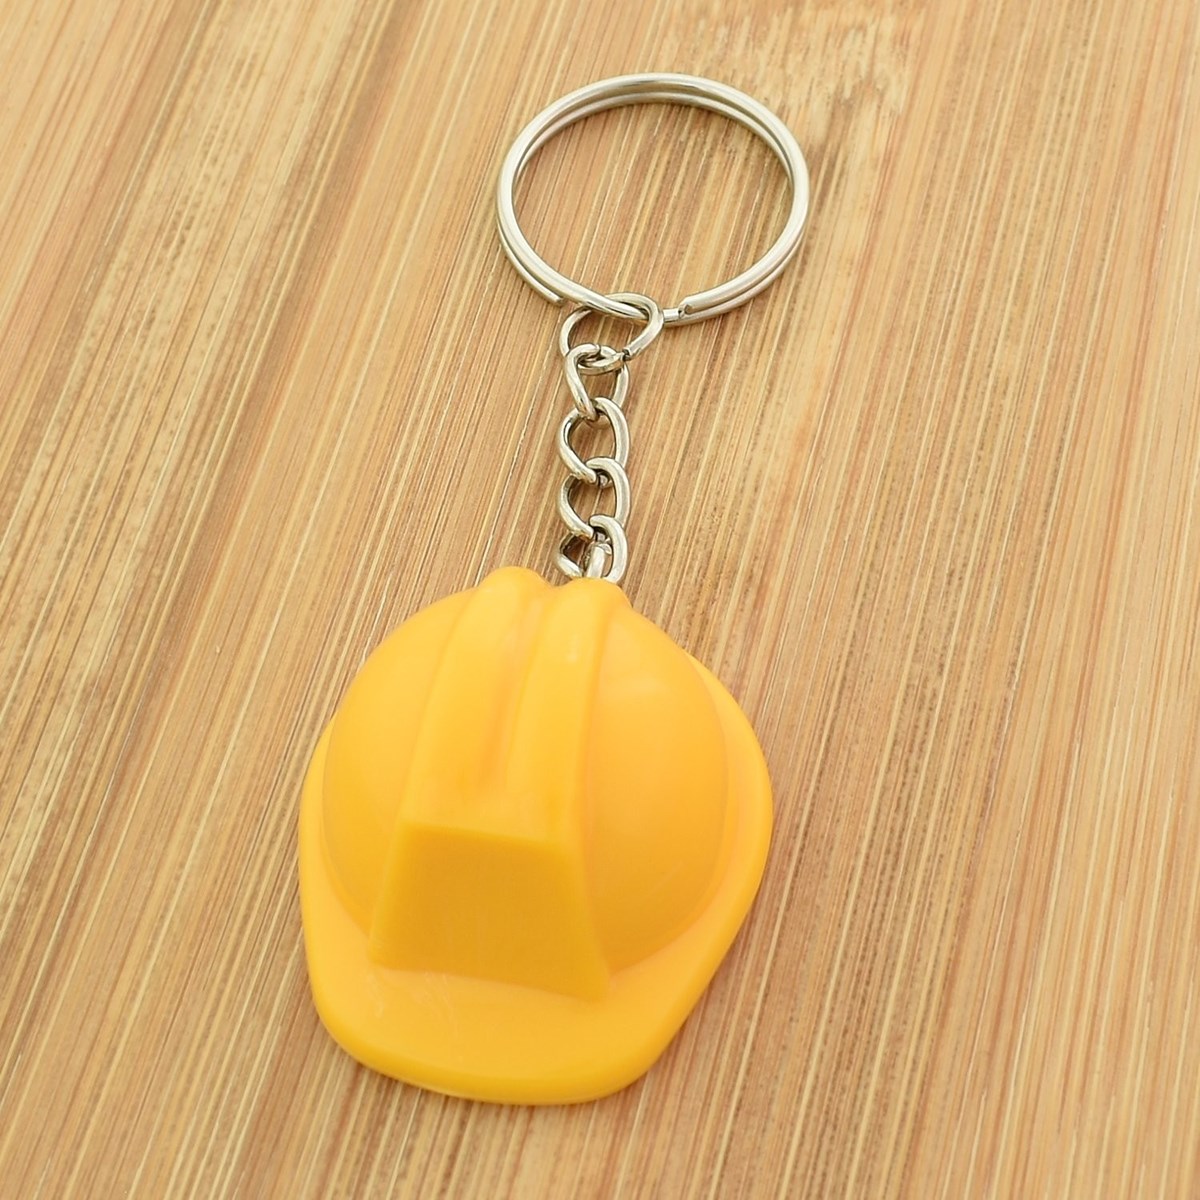 Porte-clés casque de chantier jaune sécurité construction - vue 2